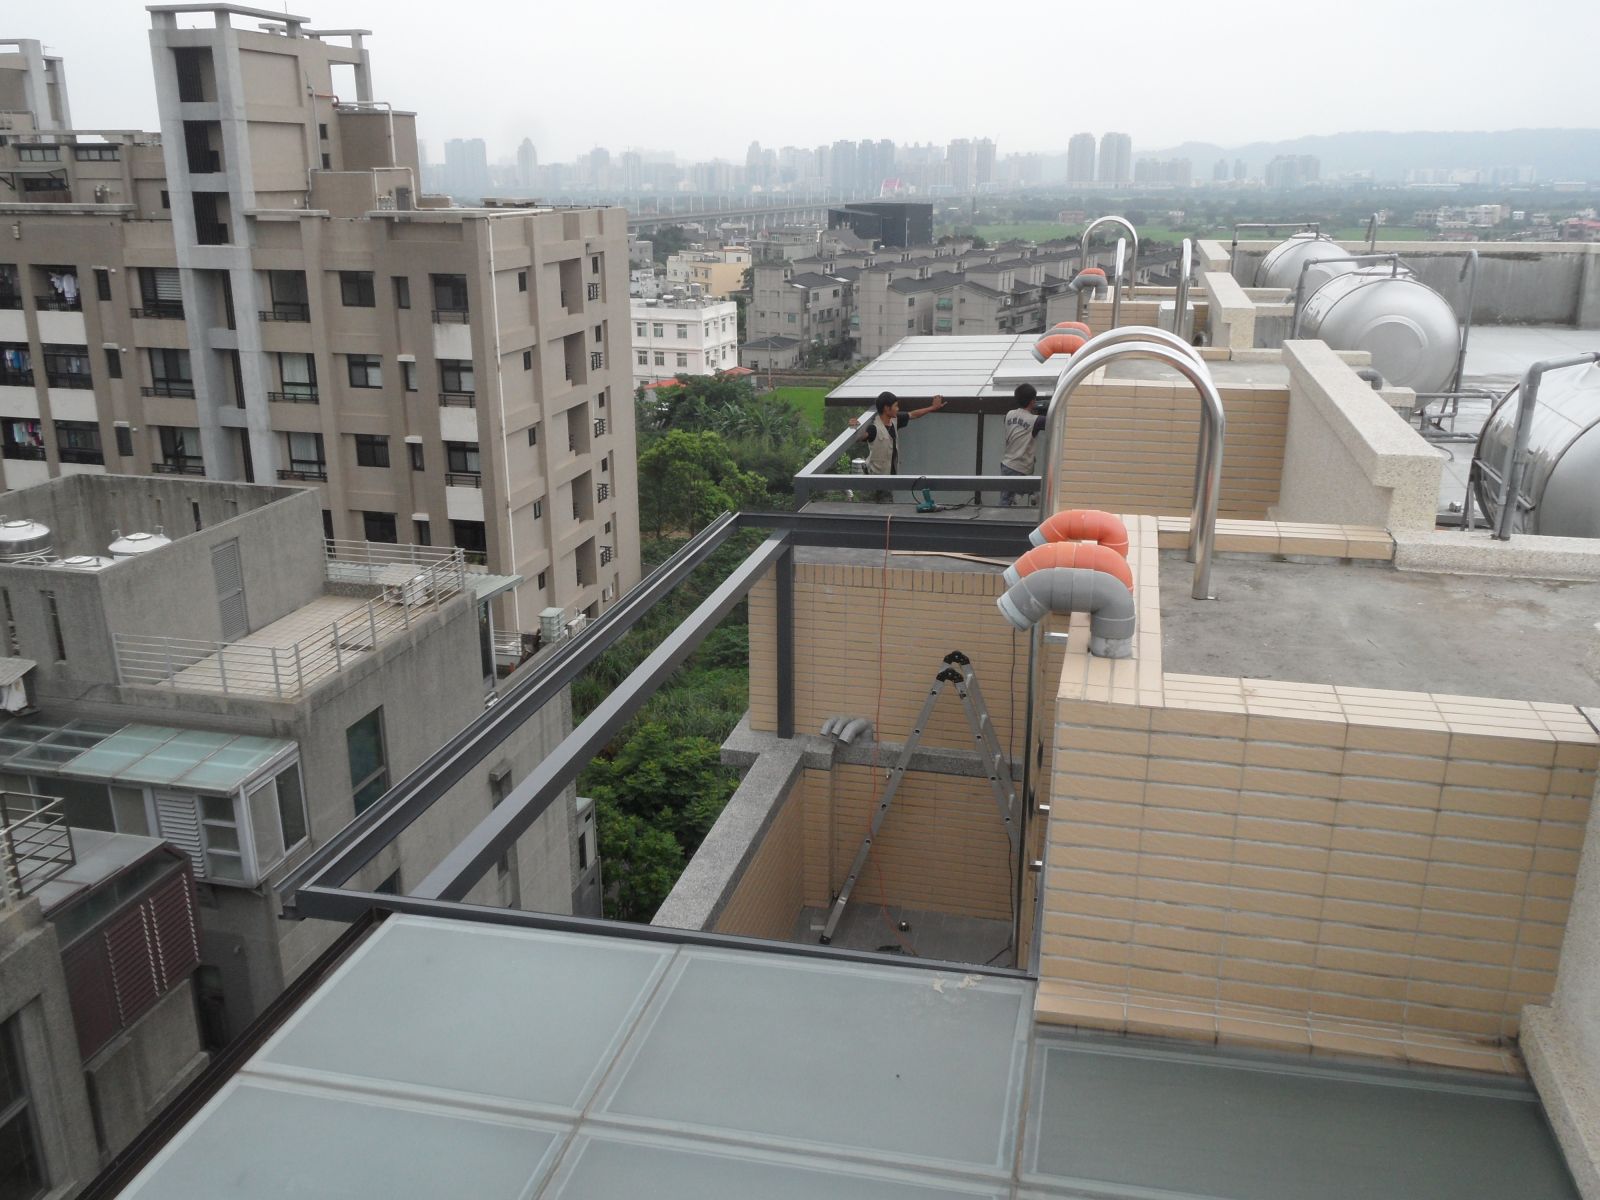 本工程為頂樓後陽台,材料顏色採用鐵灰色系列